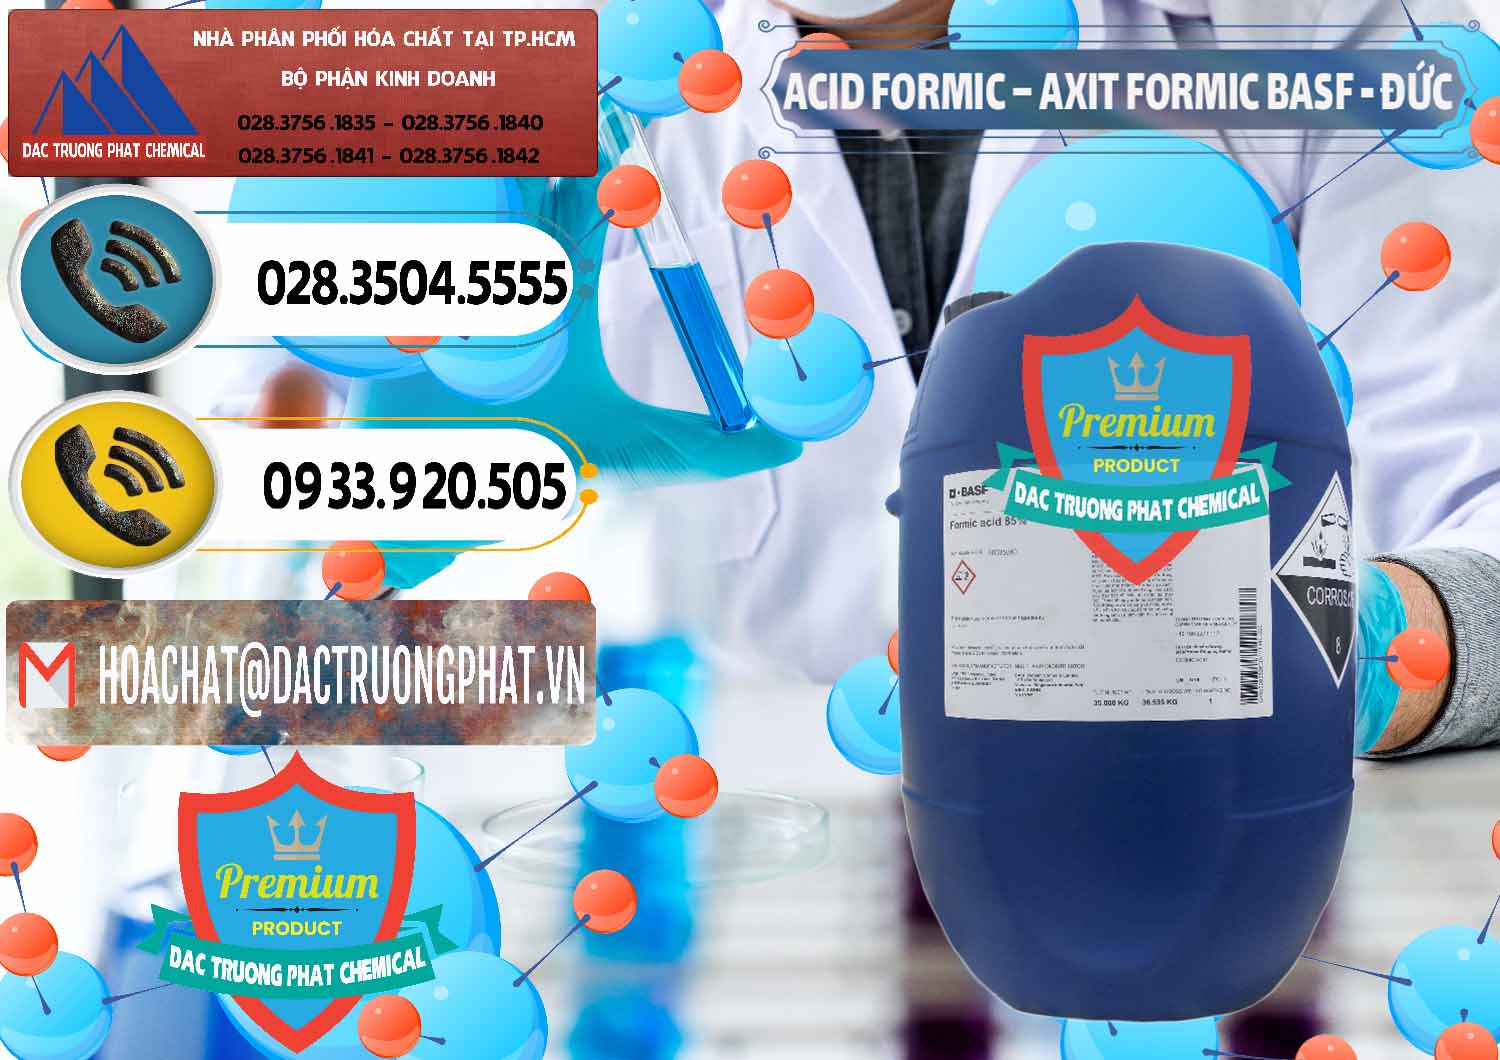 Cty phân phối và bán Acid Formic - Axit Formic BASF Đức Germany - 0028 - Đơn vị cung cấp ( phân phối ) hóa chất tại TP.HCM - hoachatdetnhuom.vn